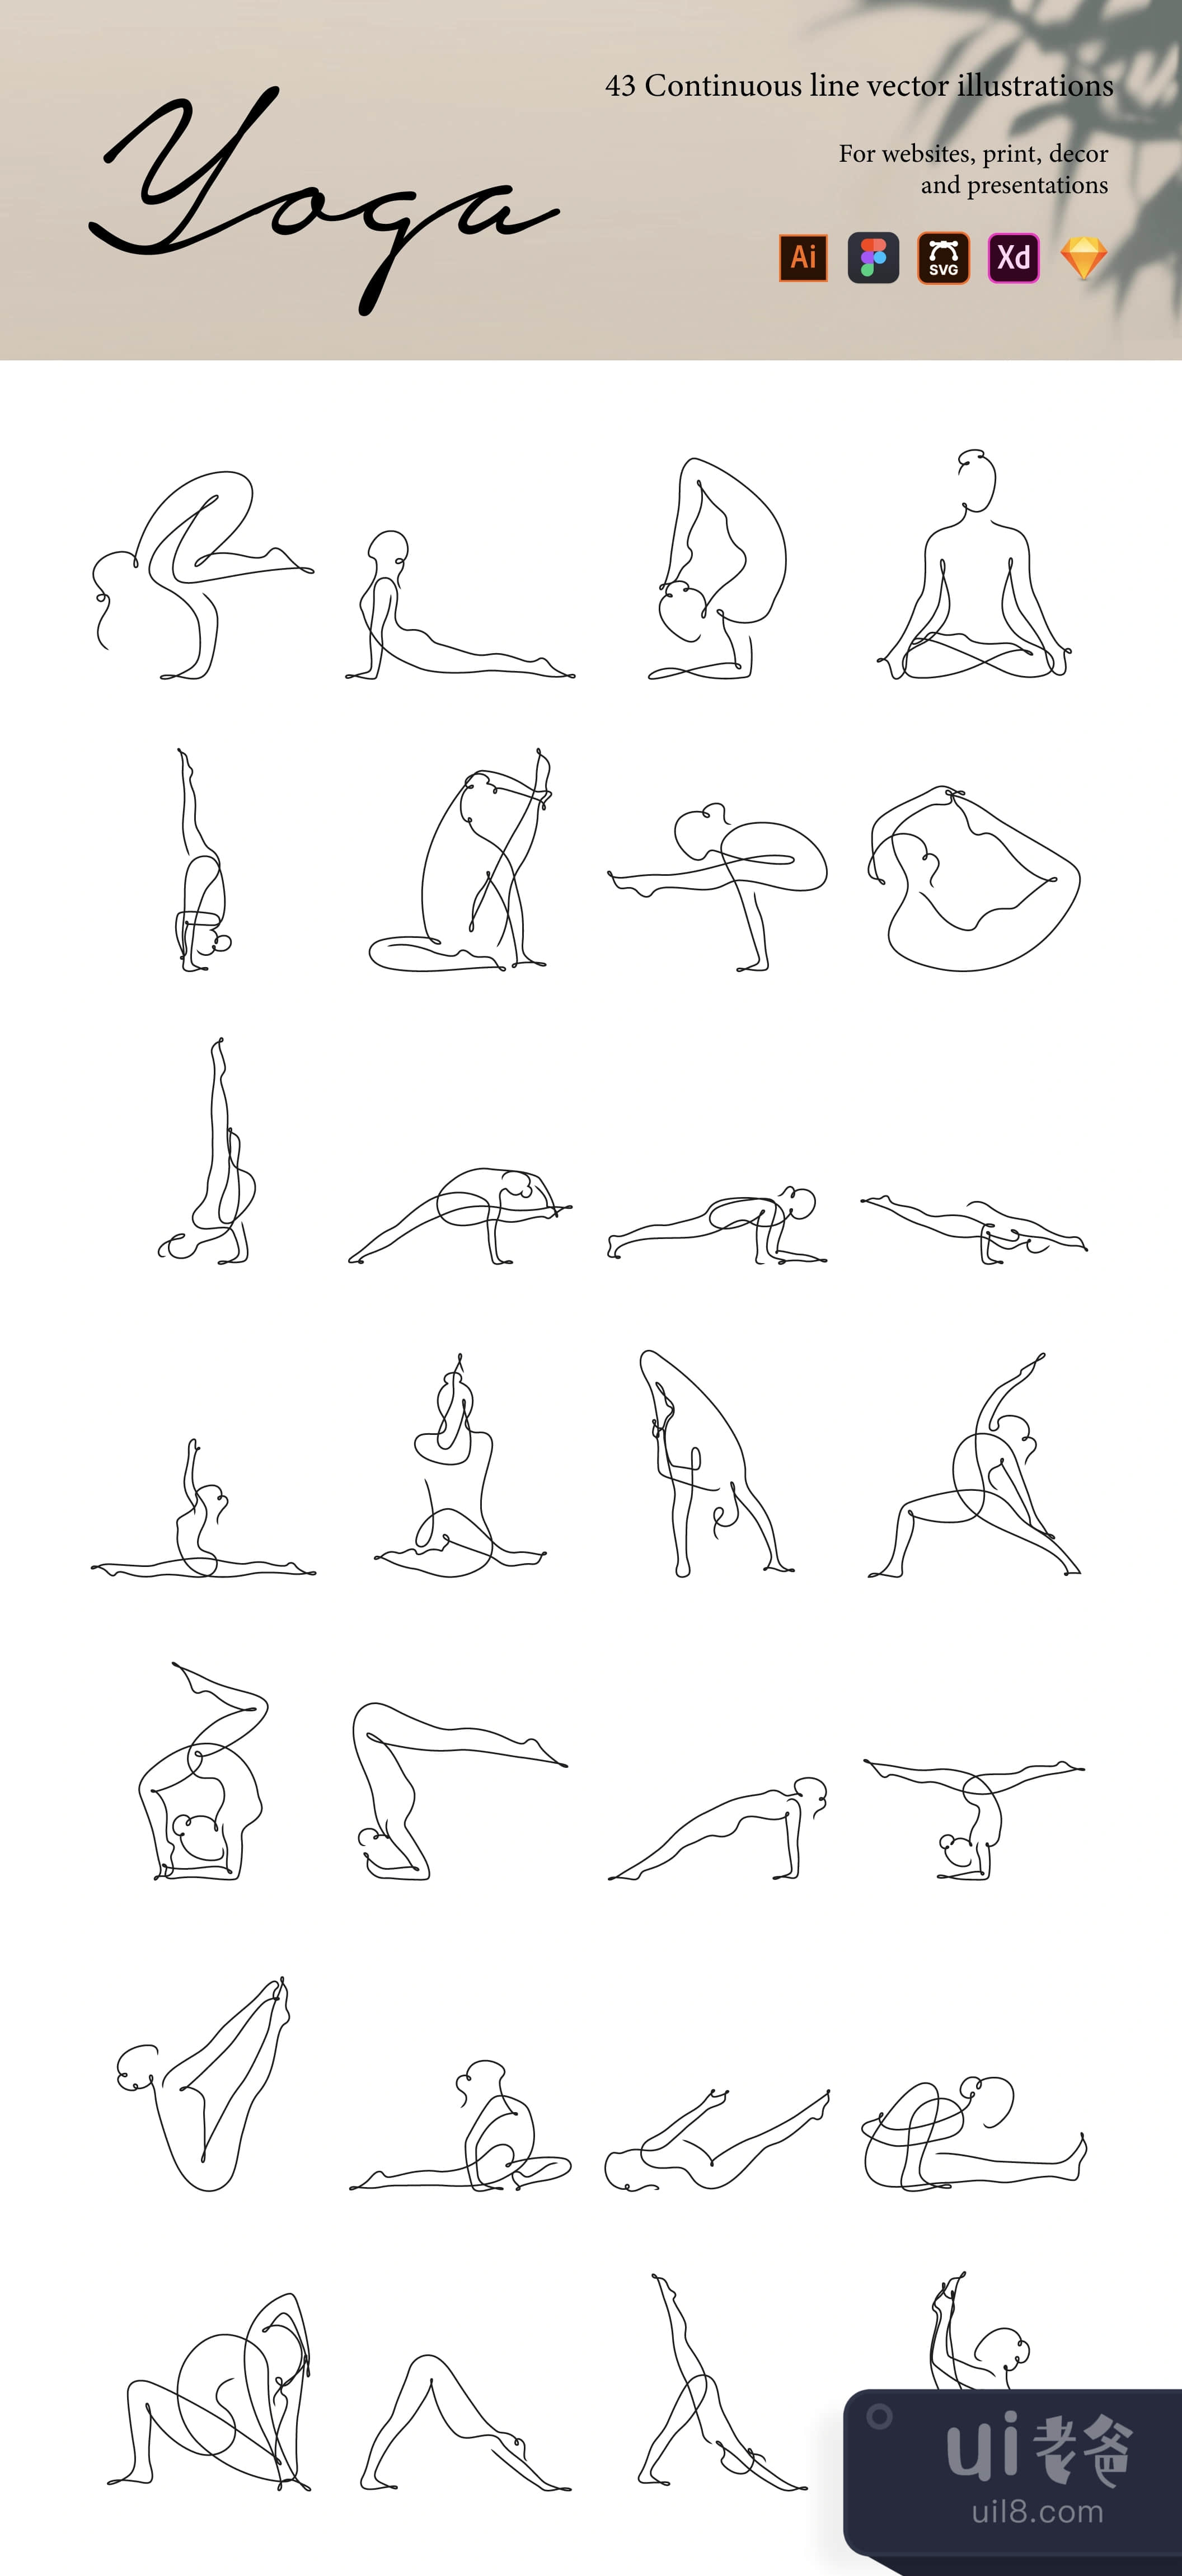 瑜伽连续线插图 (Yoga Continuous Line Illustrations)插图